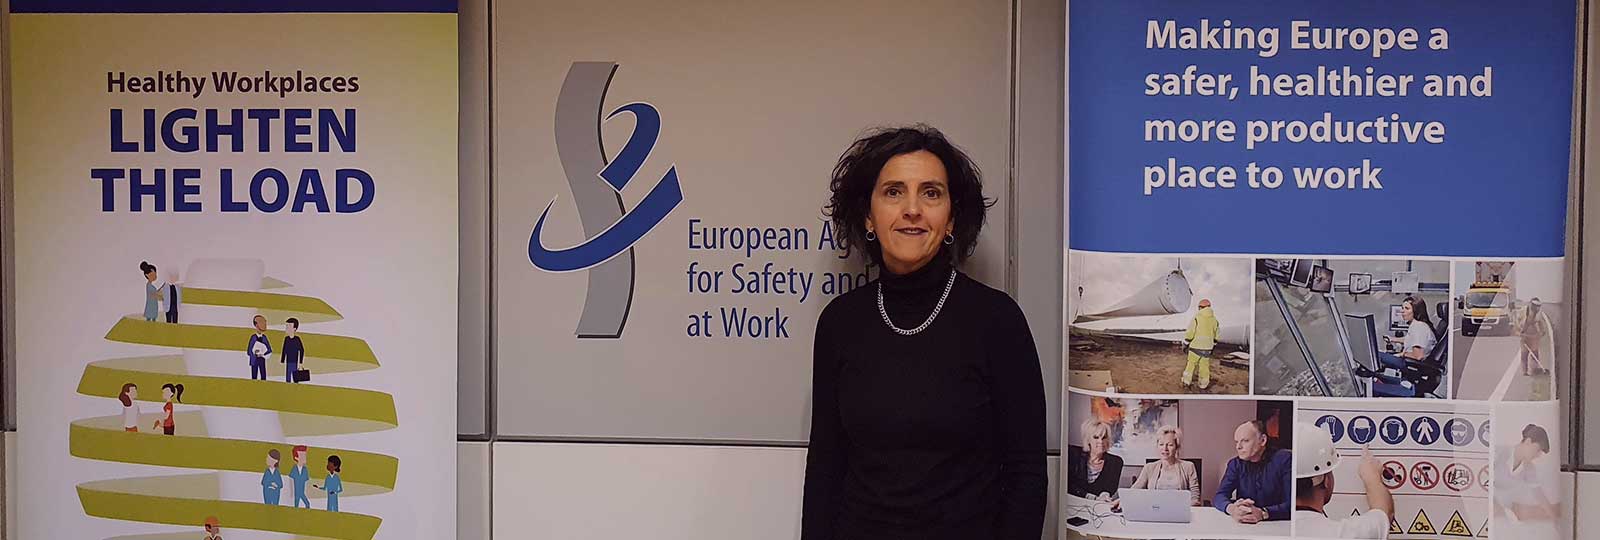 Entrevista a la Agencia Europea para la Seguridad y la Salud en el Trabajo (EU-OSHA).